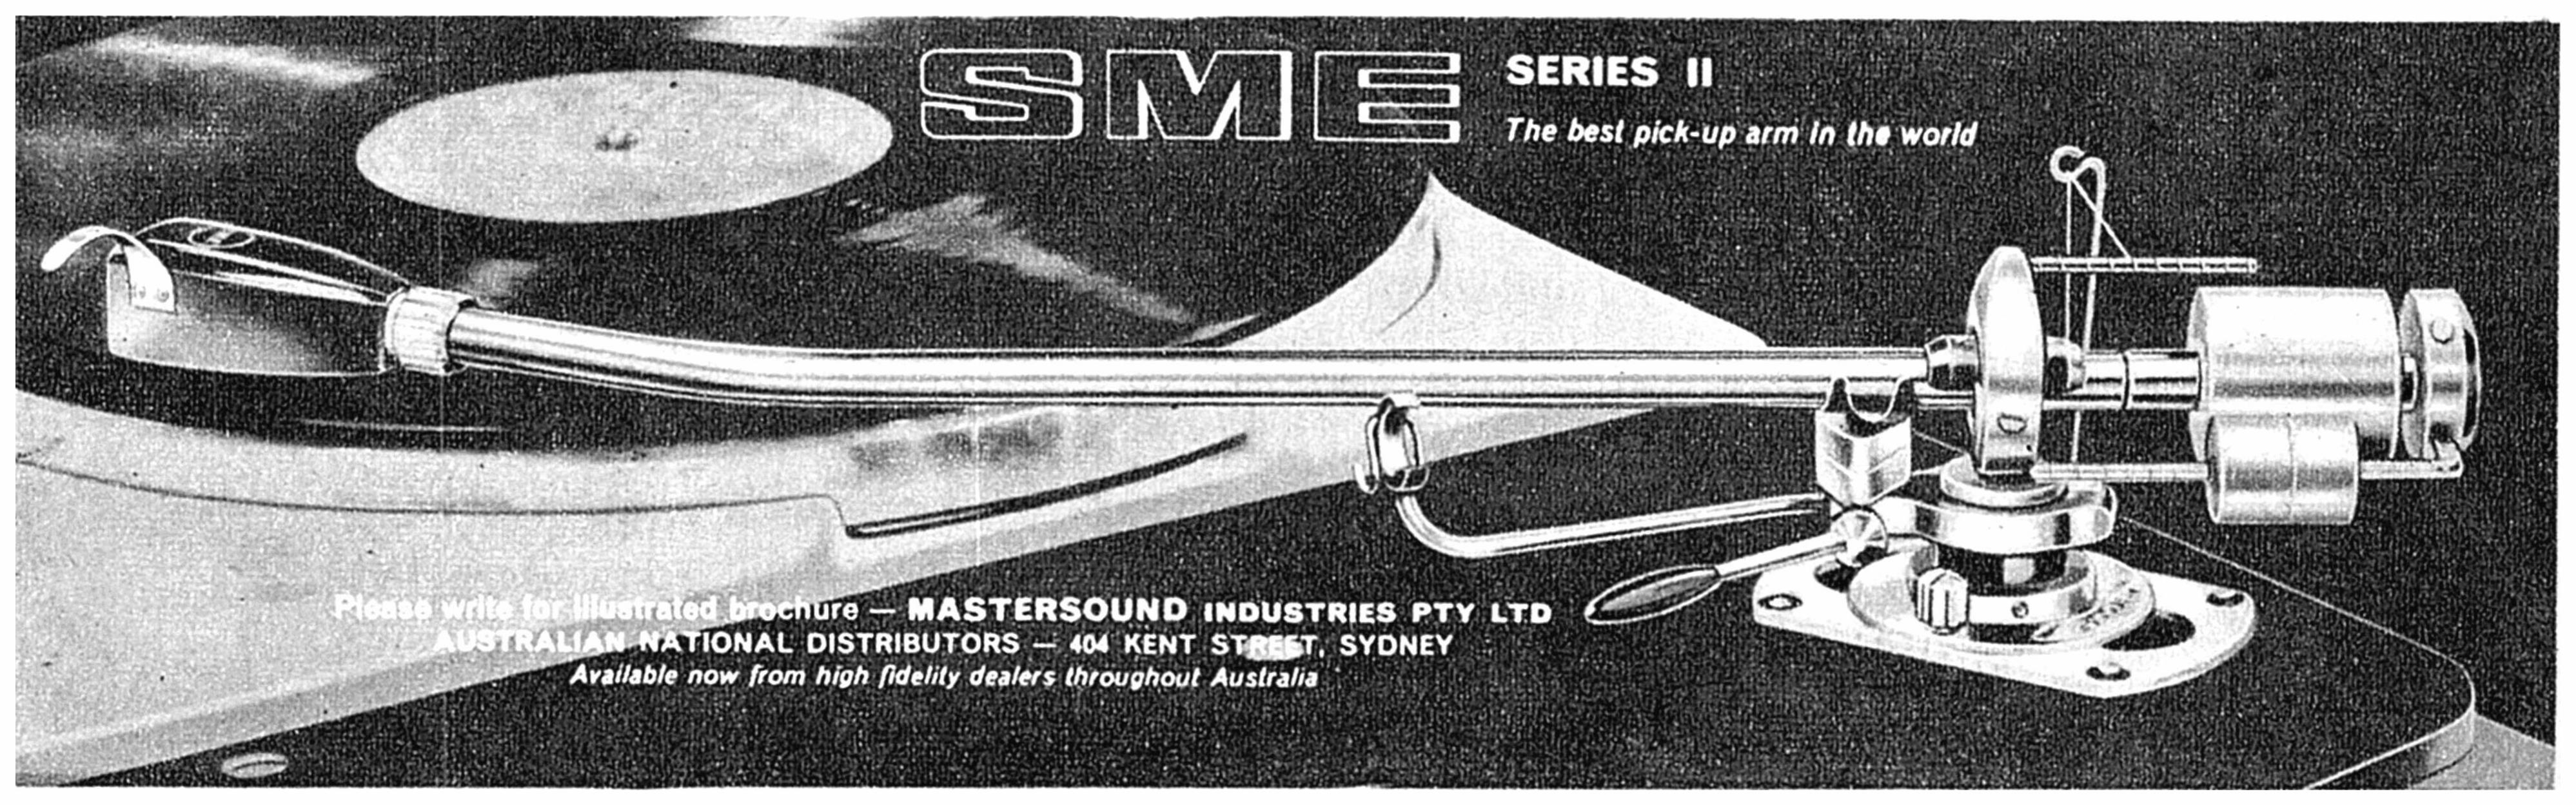 SME 1963 2.jpg